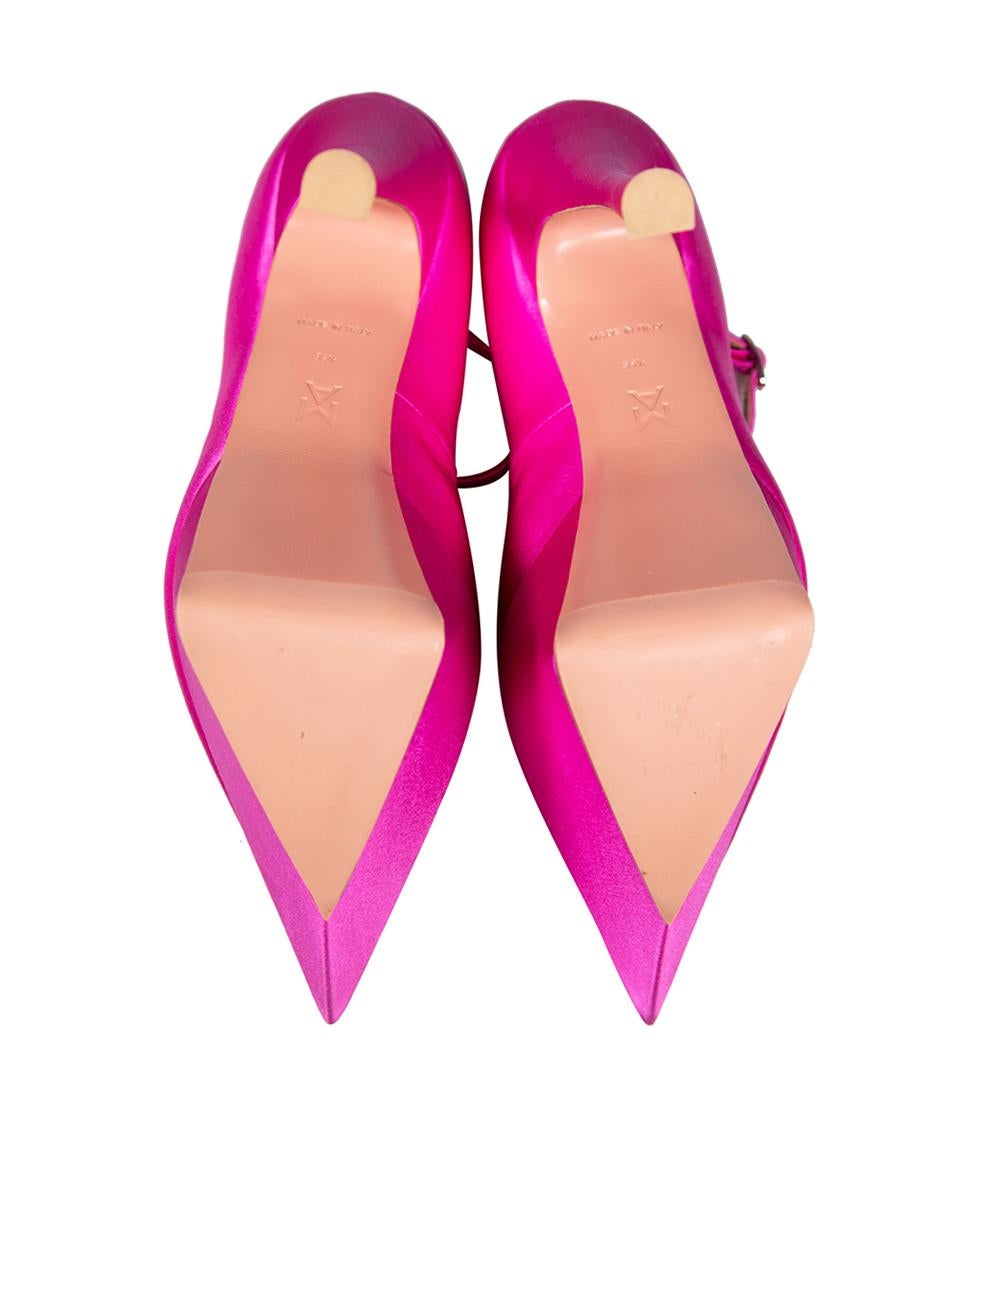 Women's Amina Muaddi Pink Satin Yigit Platform Heels Size IT 39.5